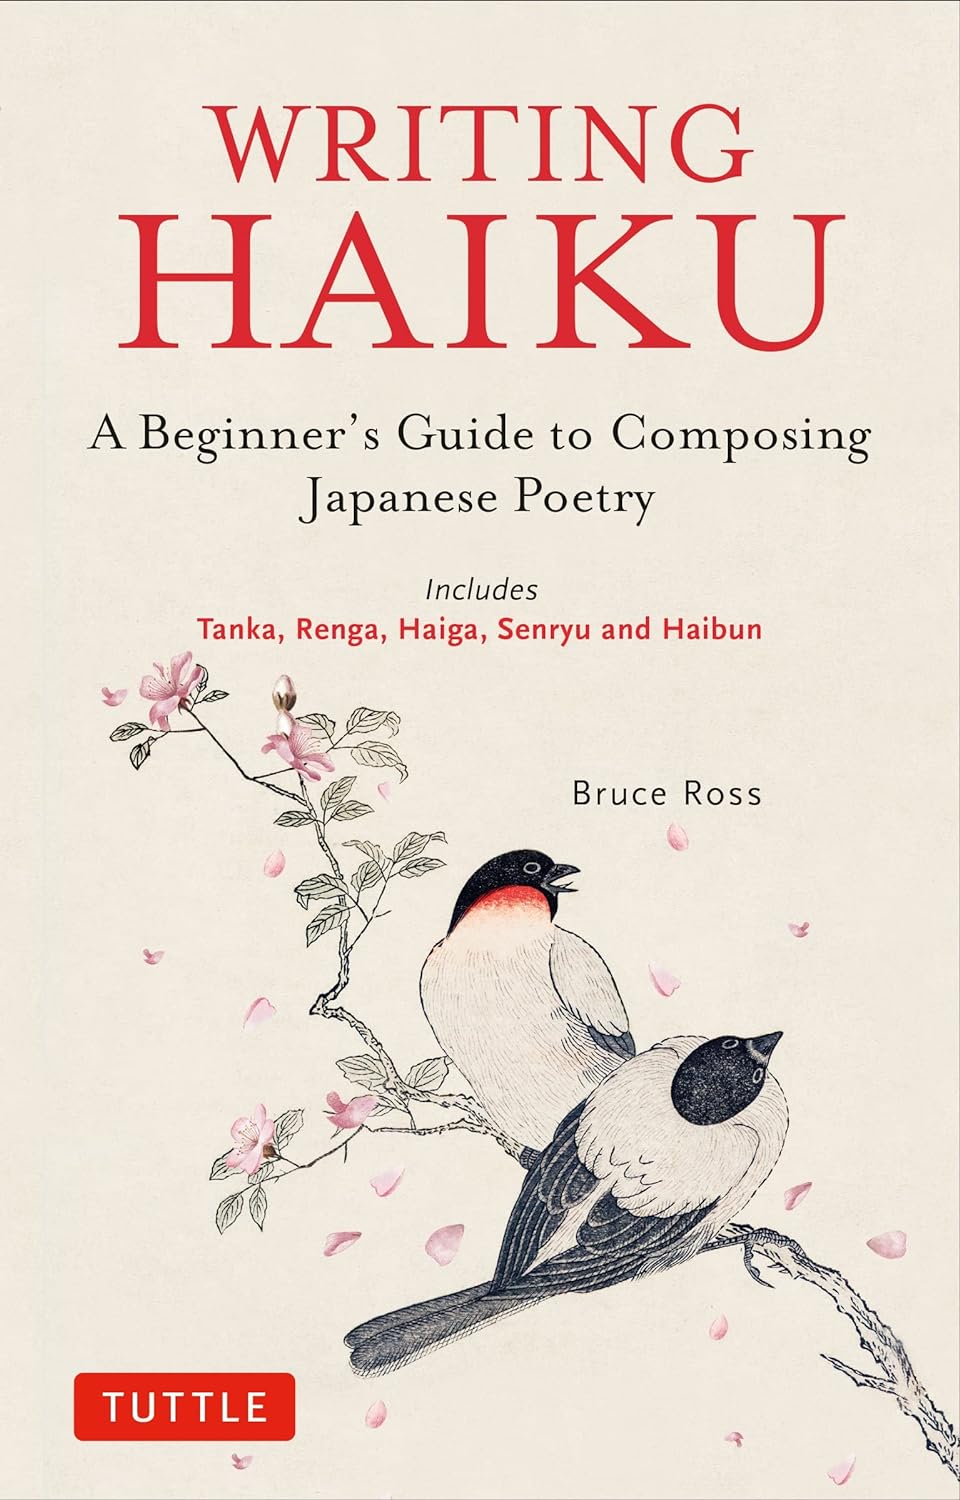 Writing Haiku: A Beginner's Guide to Composing Japanese Poetry - Includes Tanka, Renga, Haiga, Senryu and Haibun [eBook]